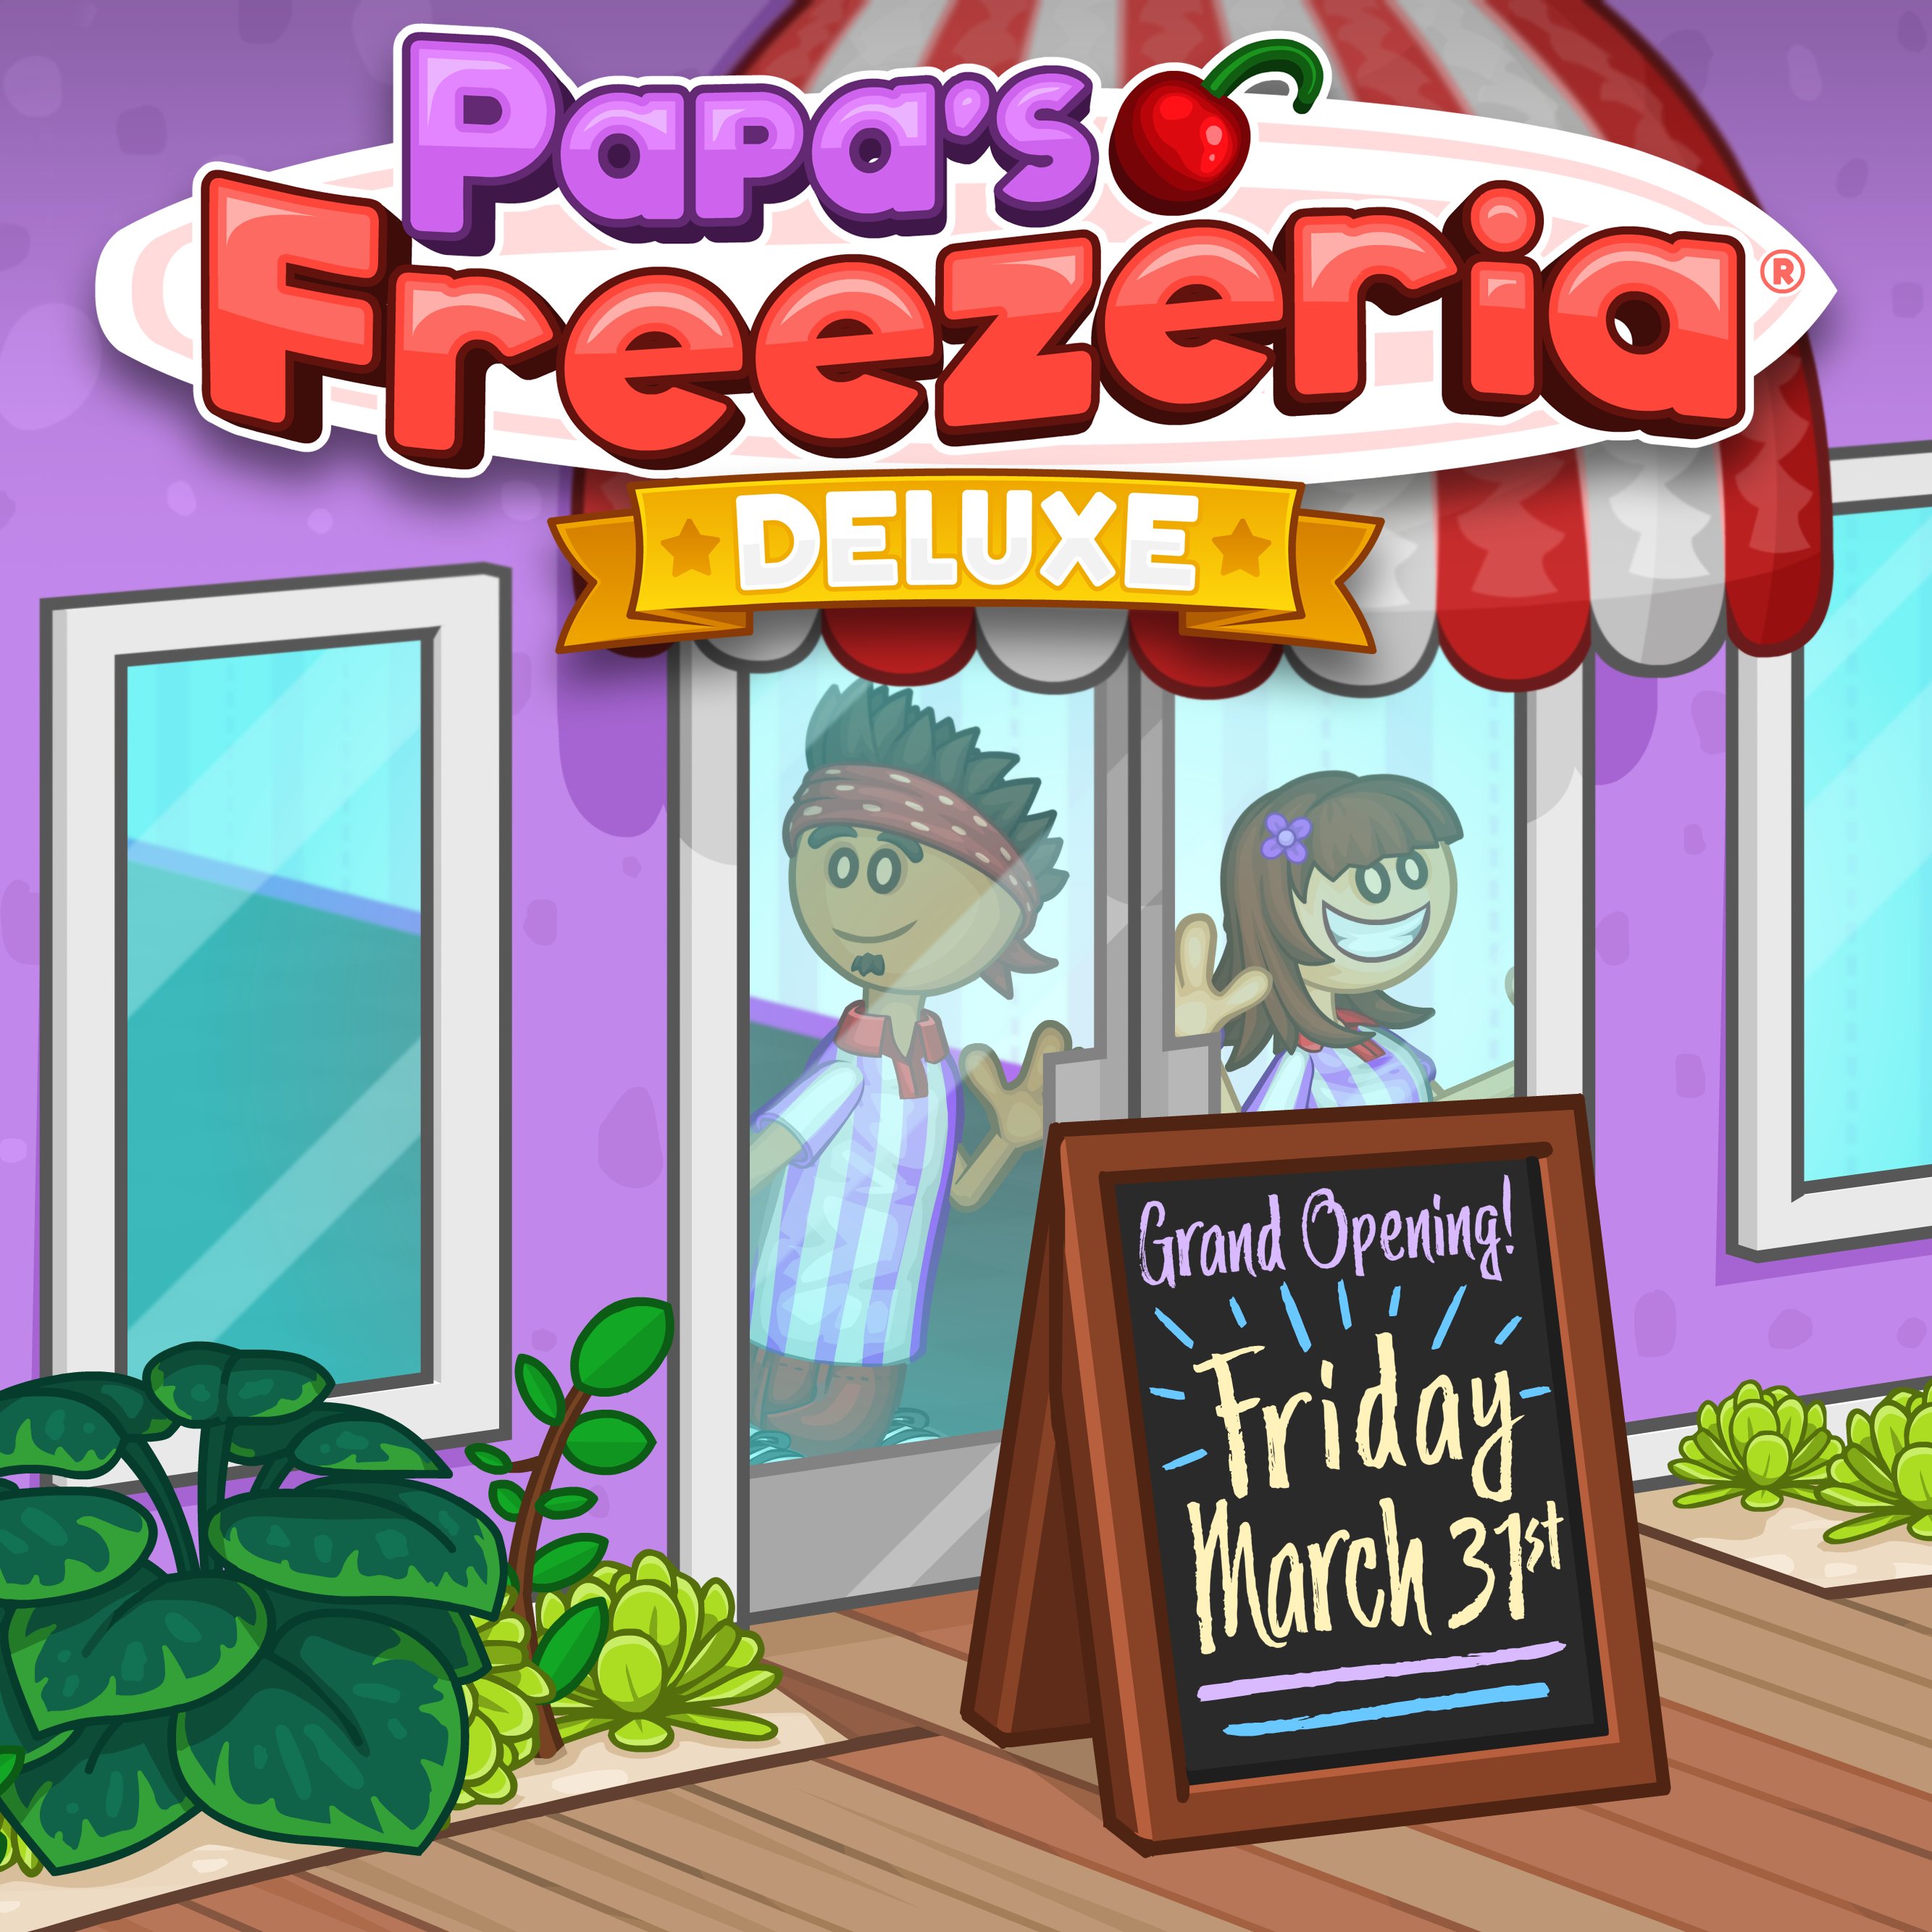 Papa's Freezeria To Go! by Flipline Studios